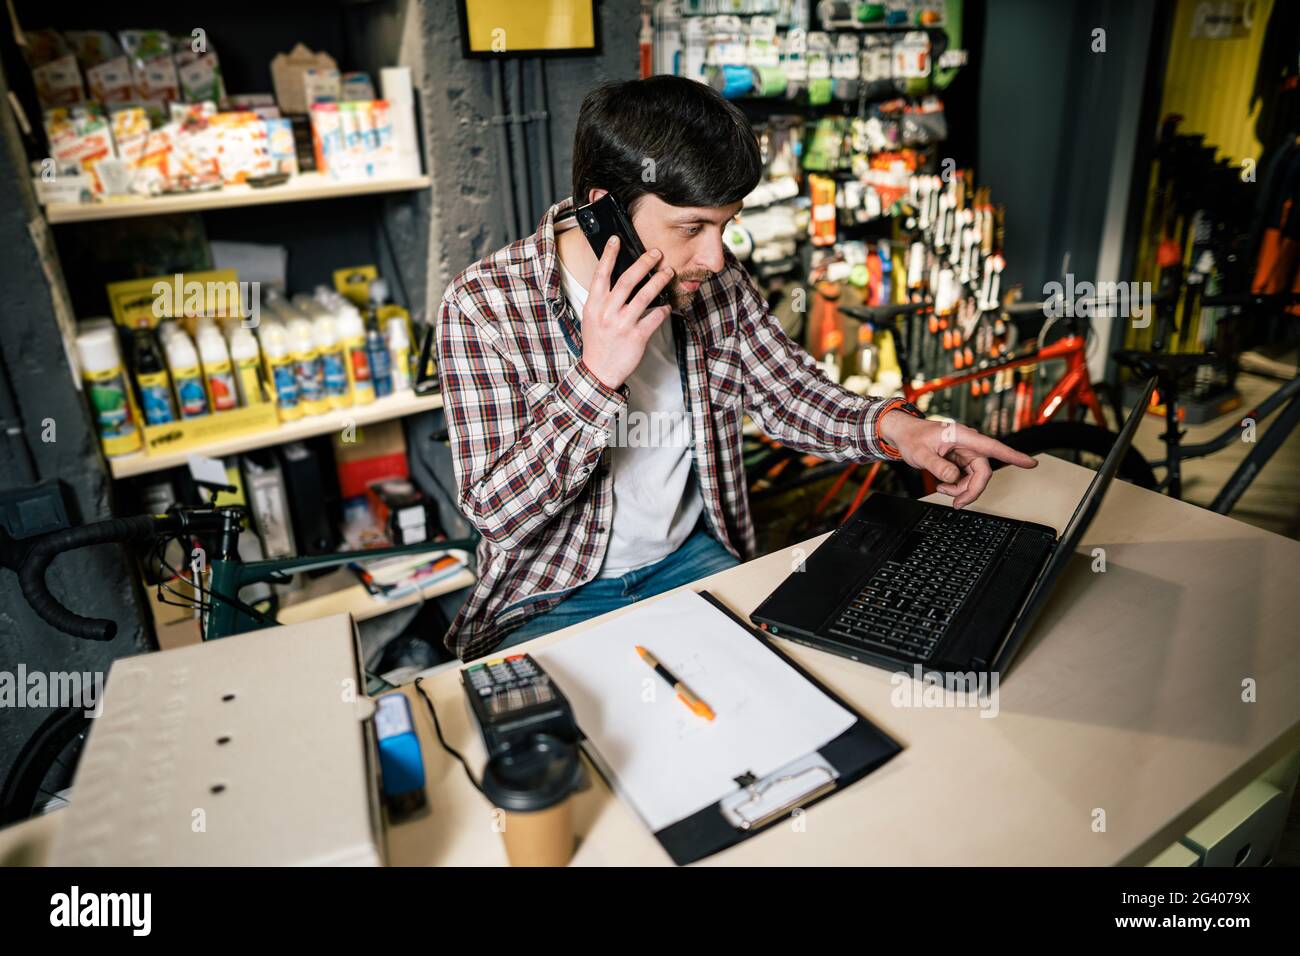 Propriétaire d'une petite entreprise au téléphone et à l'ordinateur dans le magasin. Un travailleur de la boutique de sport fait un appel avec un téléphone cellulaire. Vendeur travaillant et parlant Banque D'Images